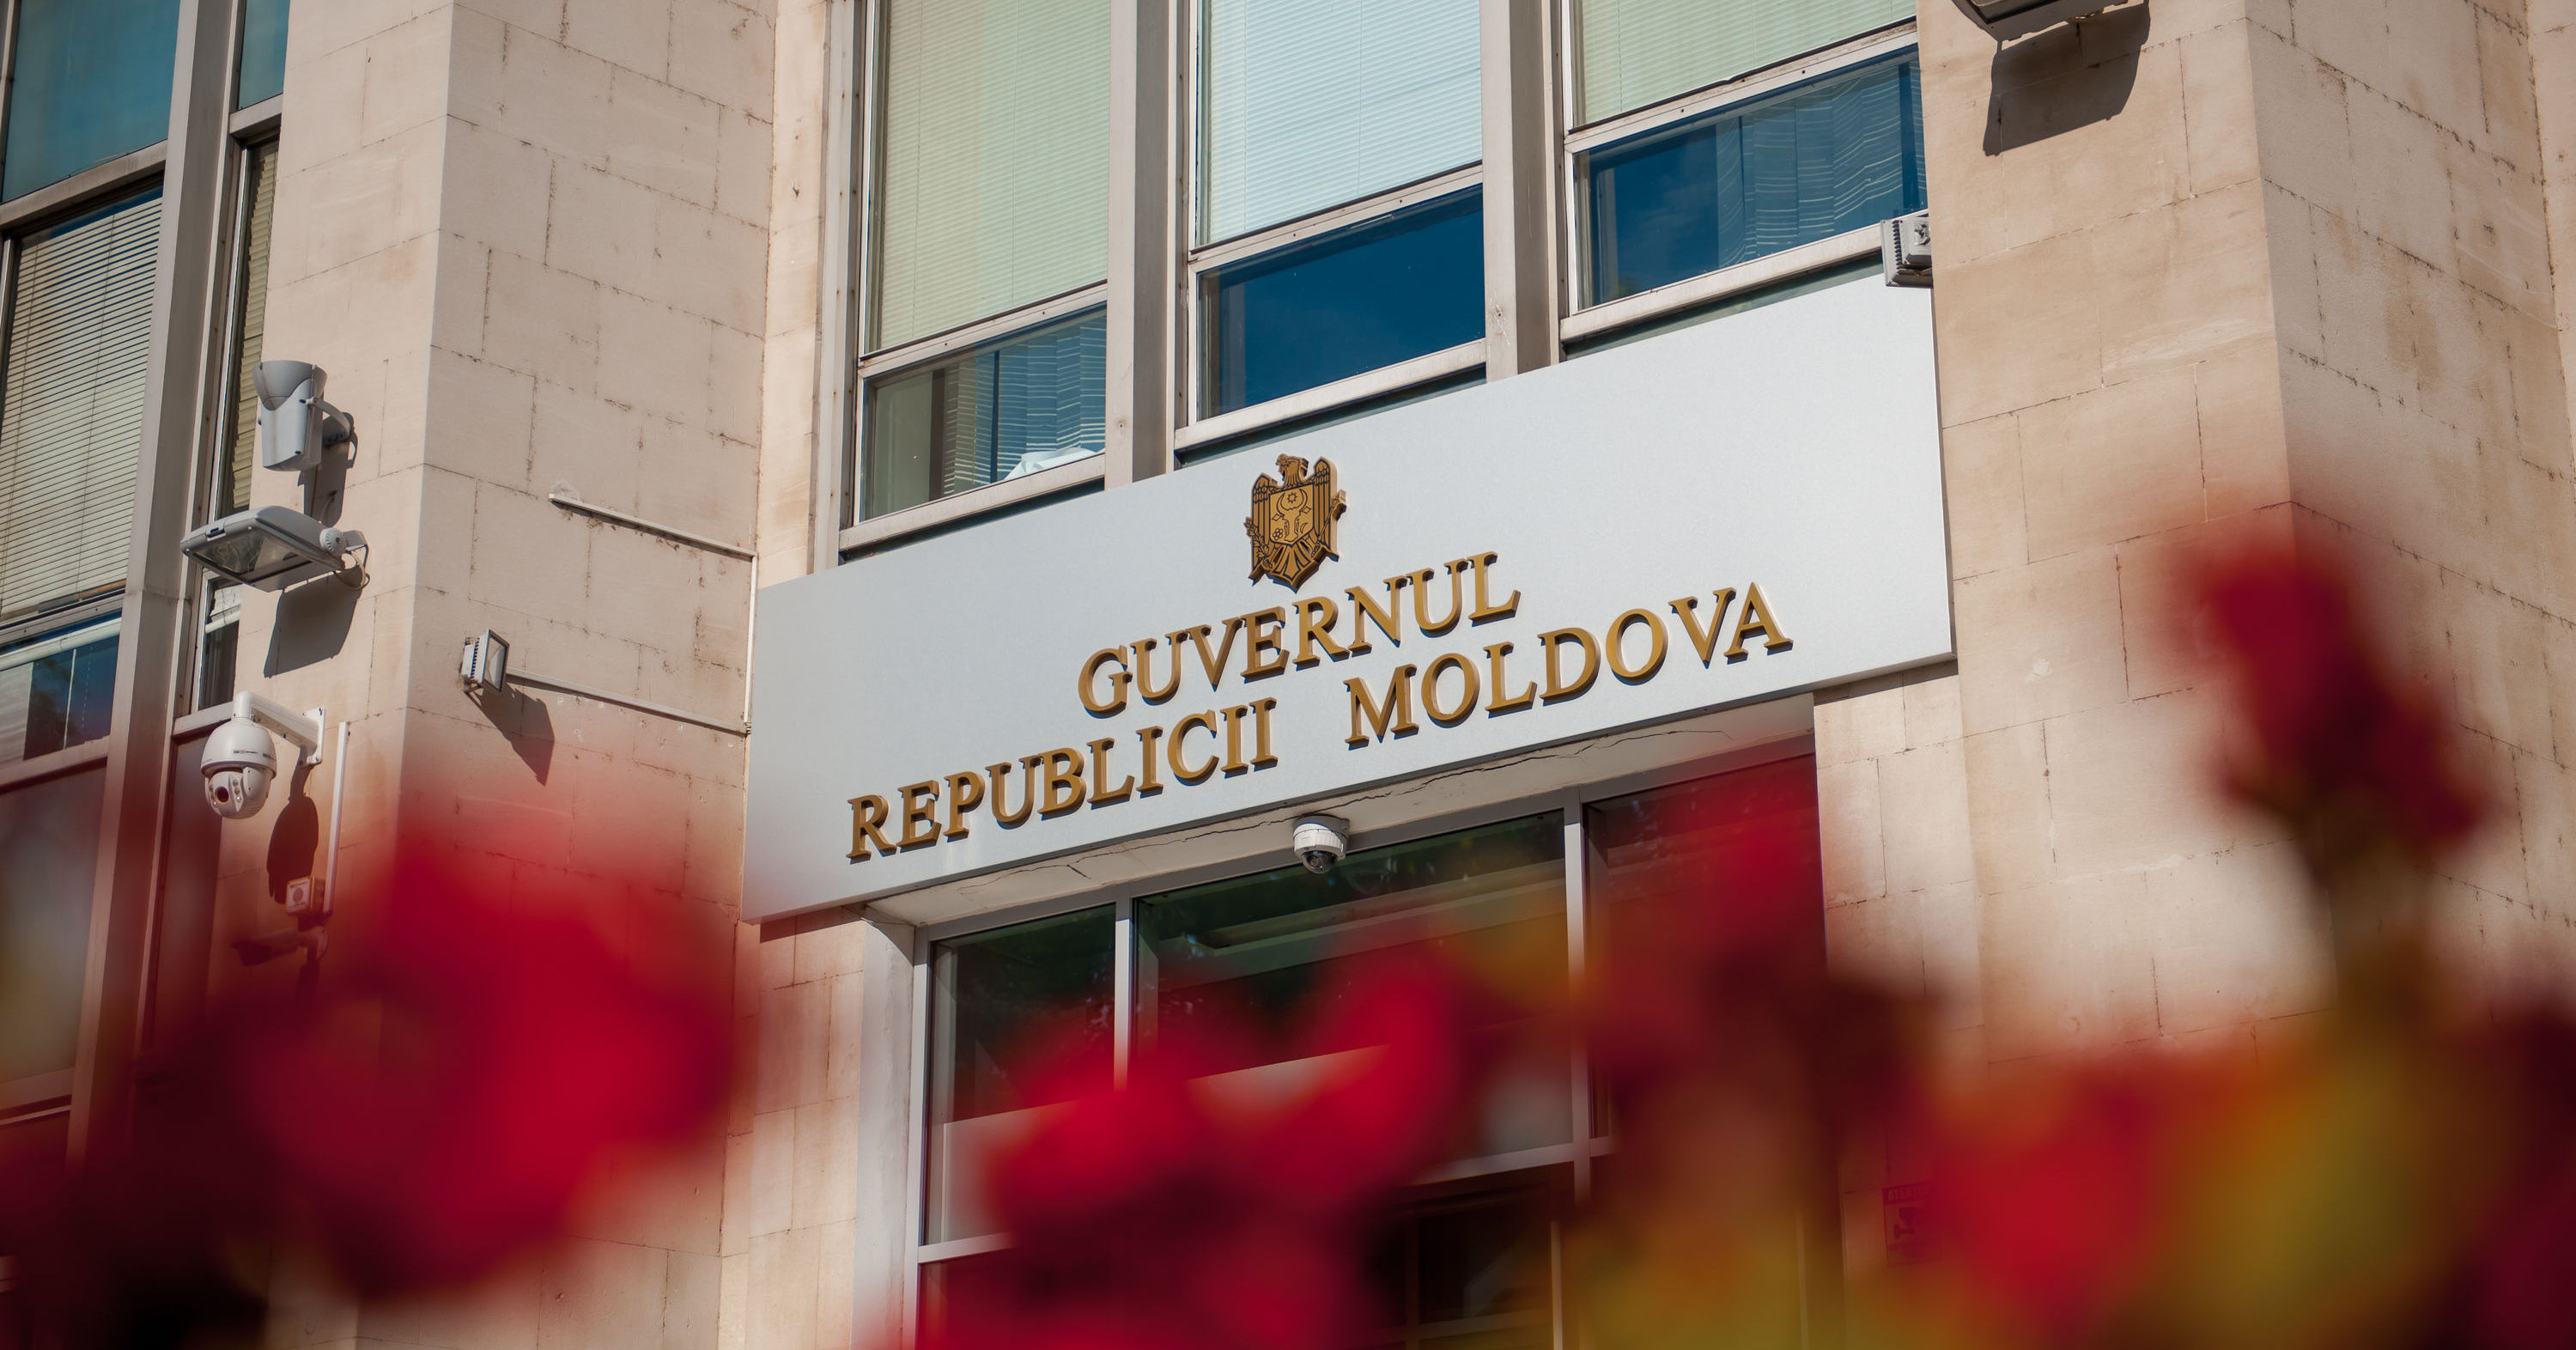 В День независимости правительство Молдовы приглашает граждан на диалог. Фото Point.md.